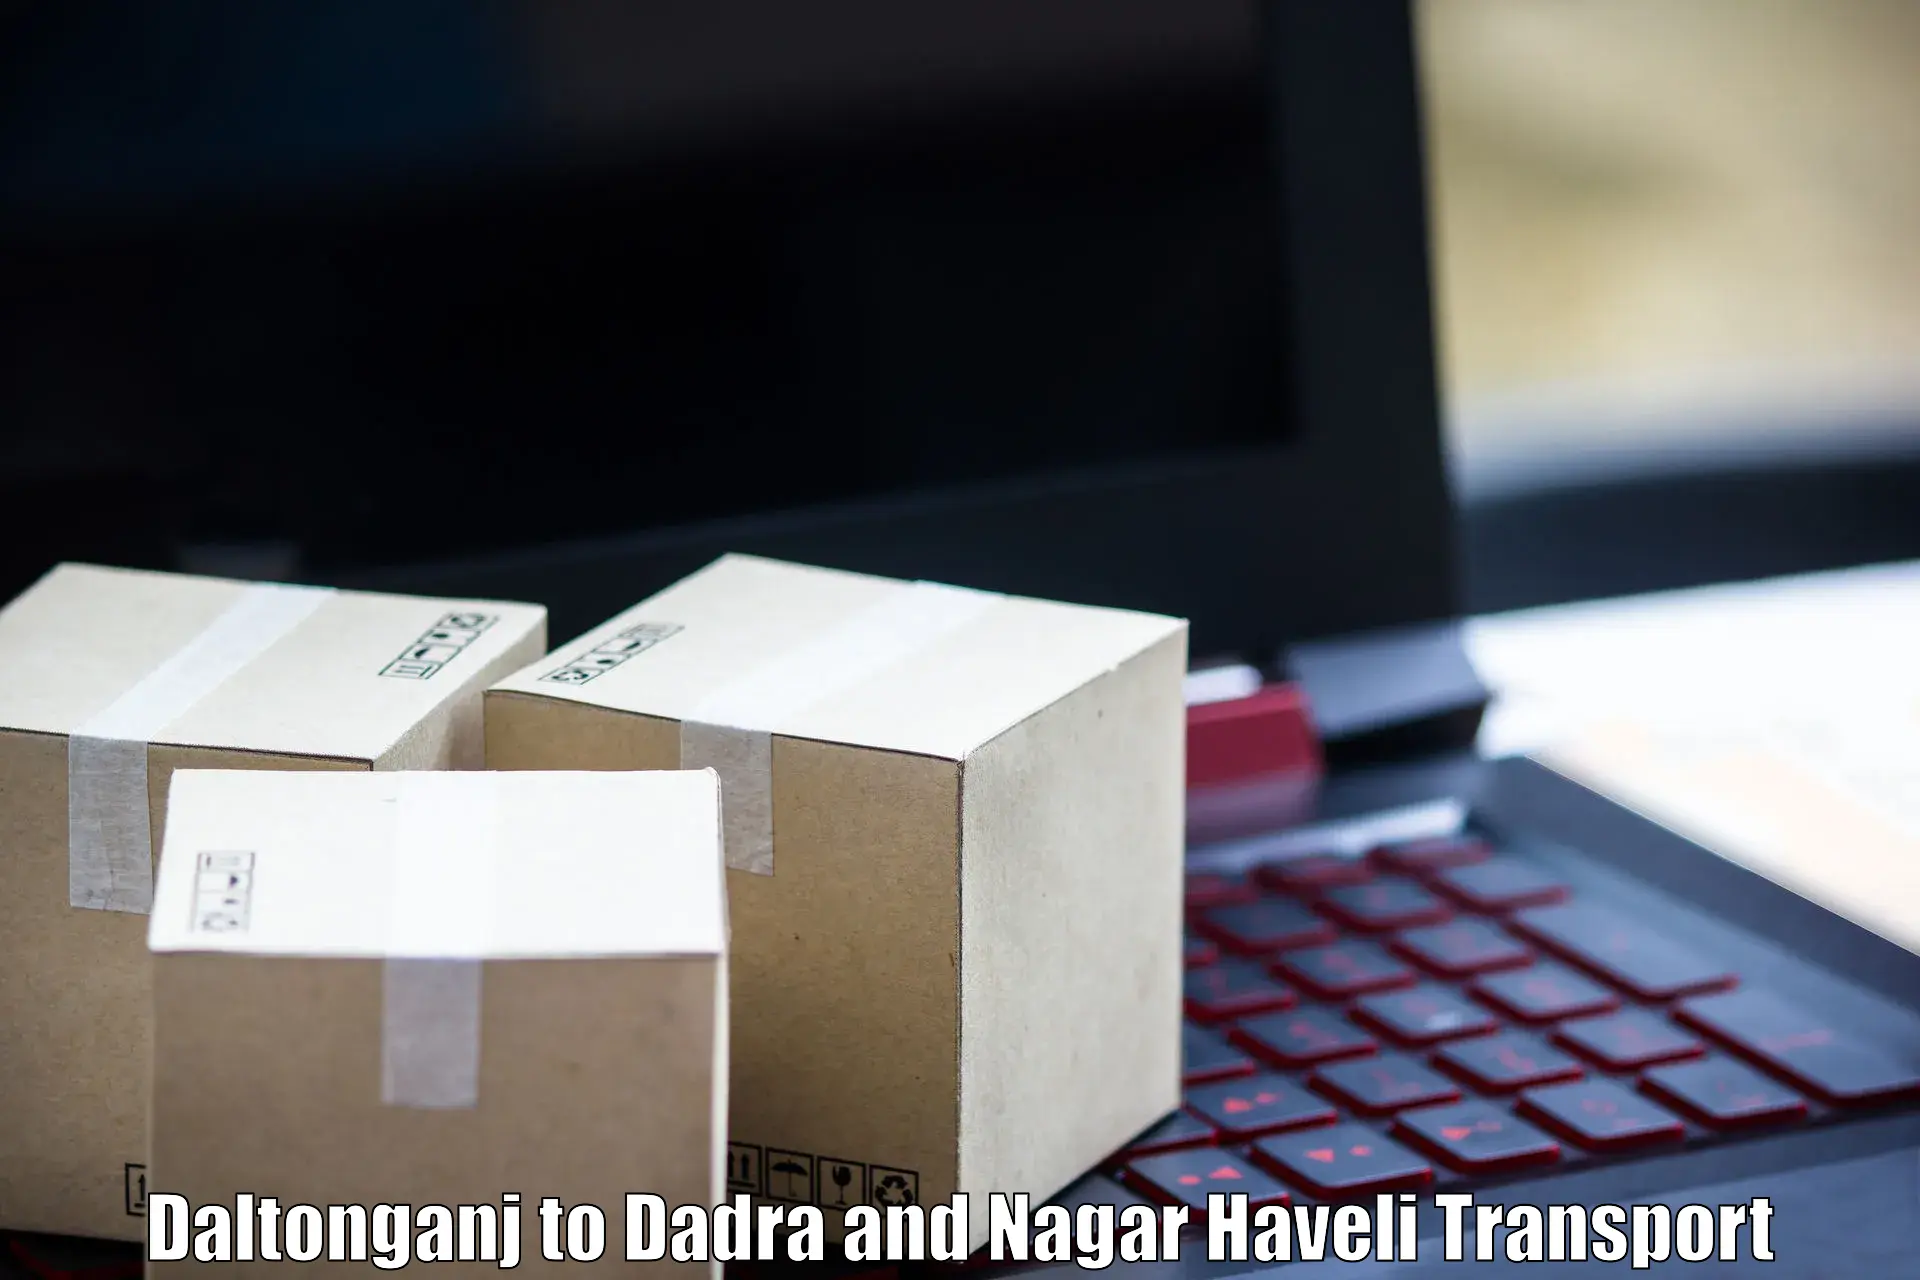 Shipping services Daltonganj to Dadra and Nagar Haveli